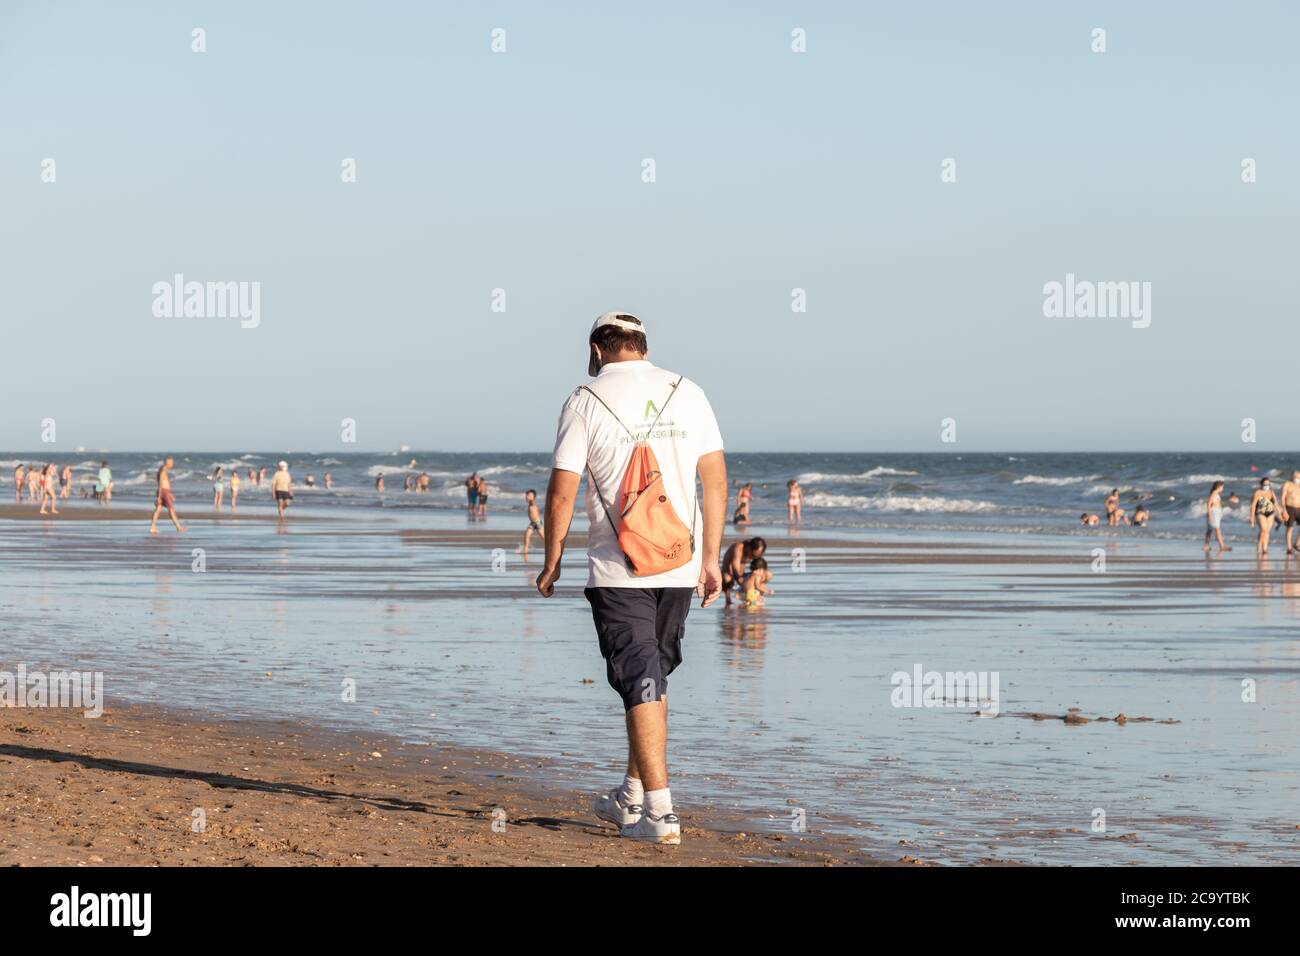 Punta Umbria, Huelva, Spagna - 2 agosto 2020: Guardia di sicurezza della spiaggia di Junta de Andalucia sta controllando l'allontanamento sociale e l'uso della maschera protettiva Foto Stock